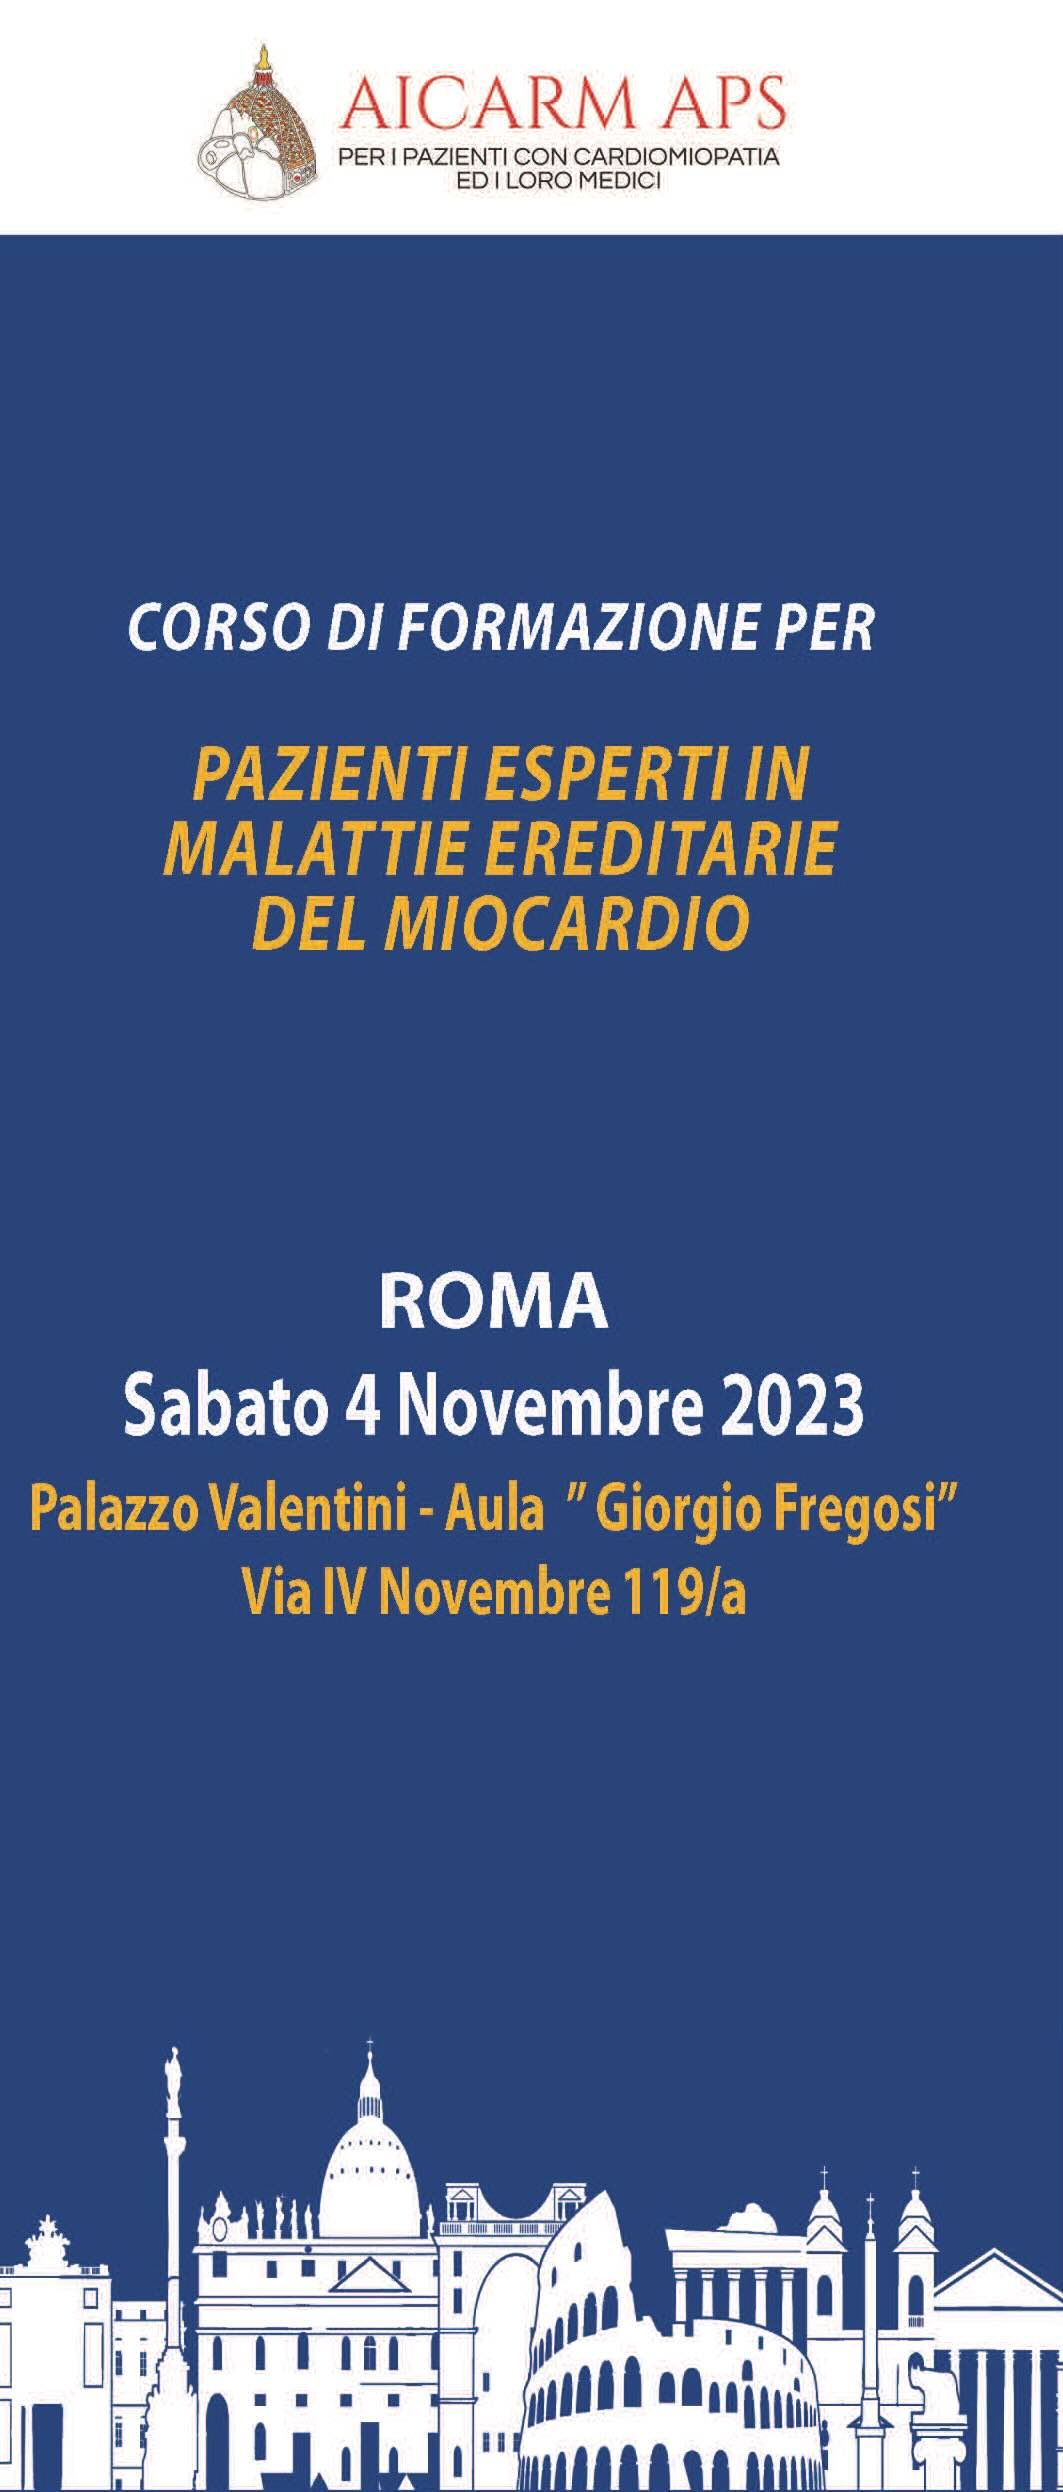 Rome Expert patients 2023